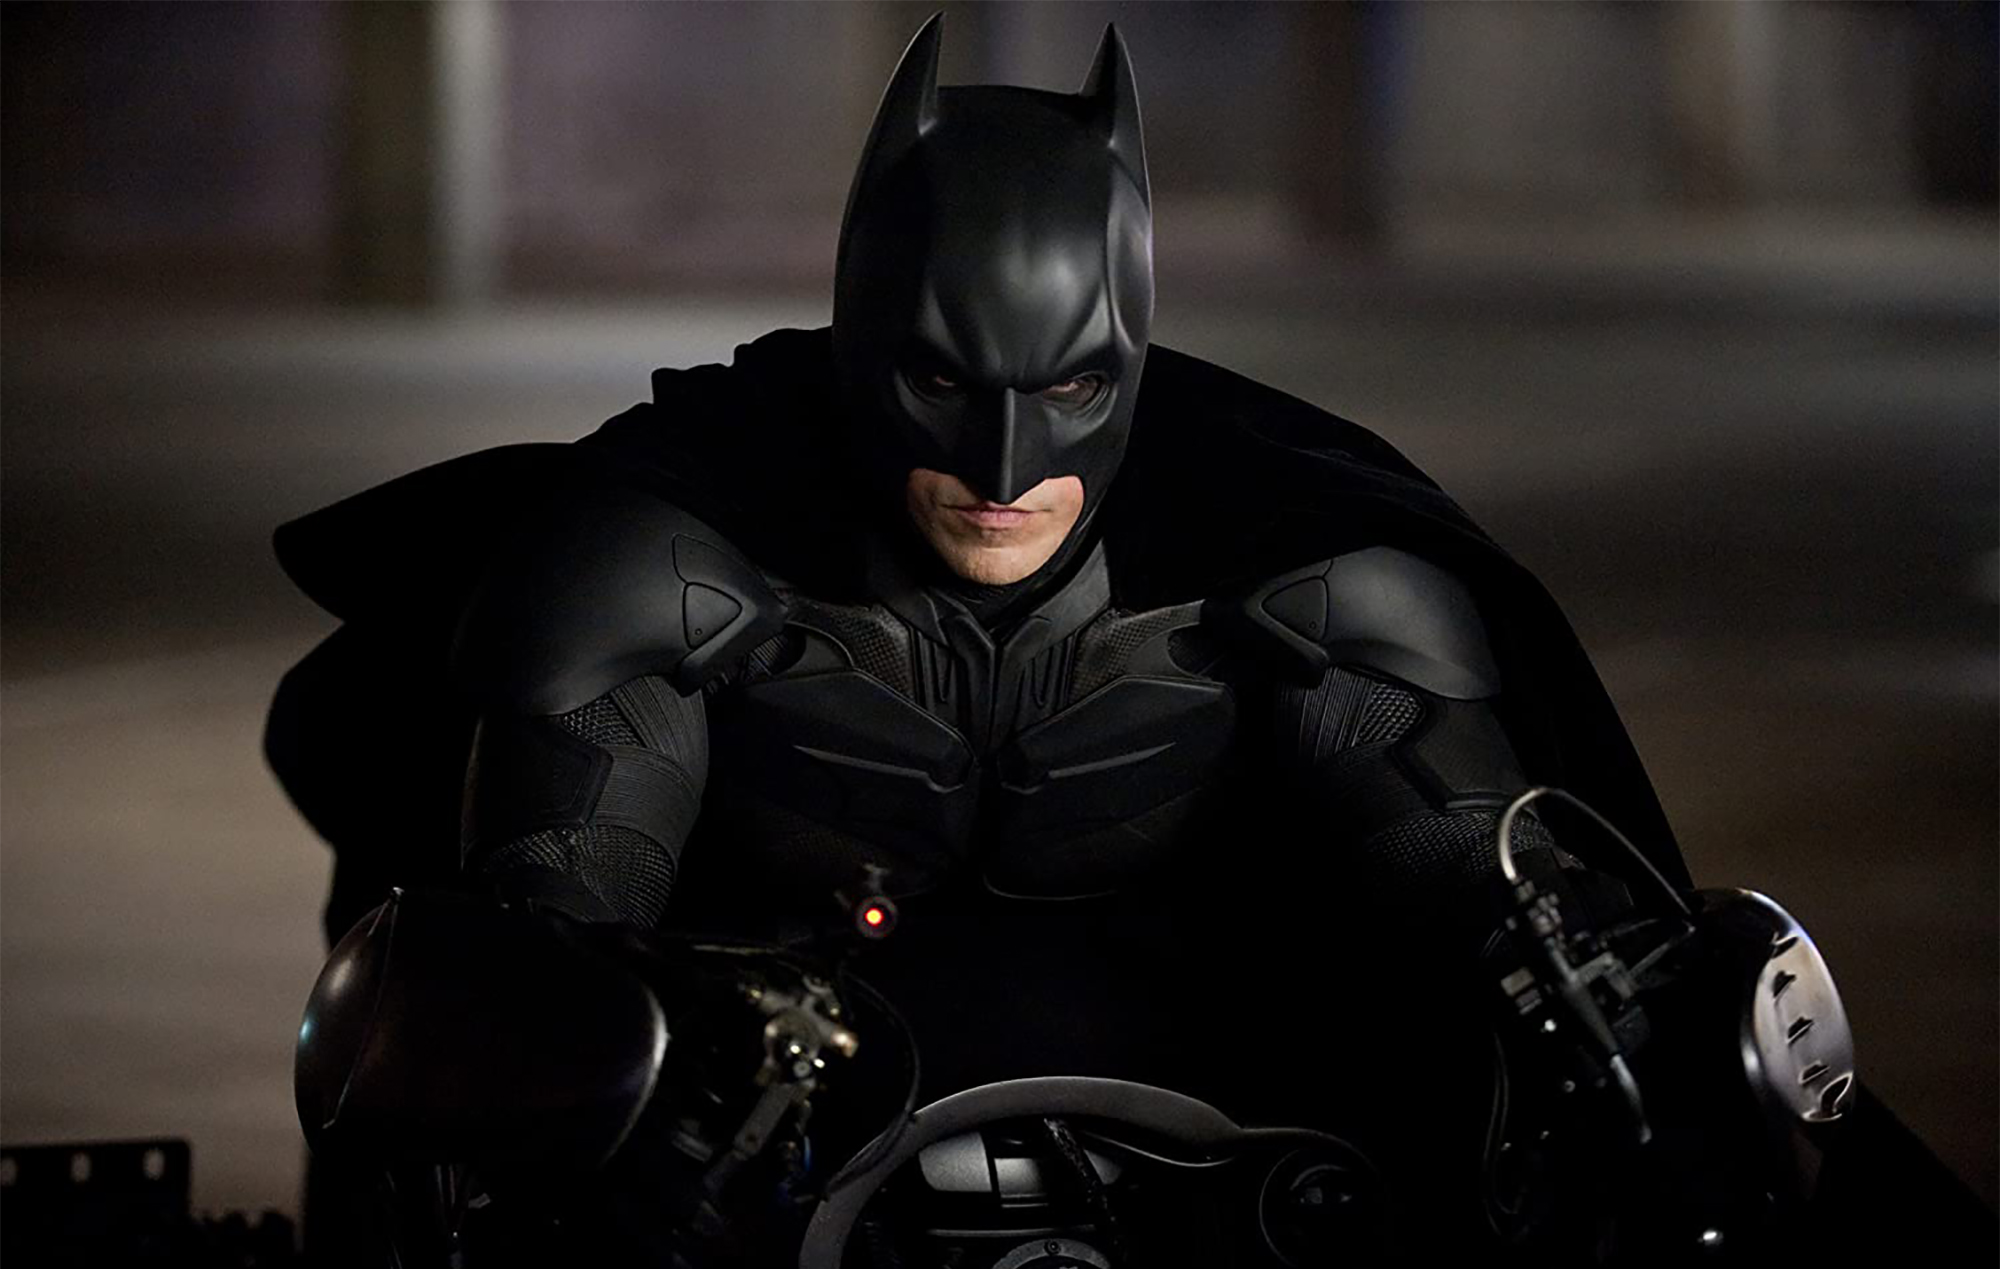 The Dark Knight Rises': Why a "sickening" death scene was cut